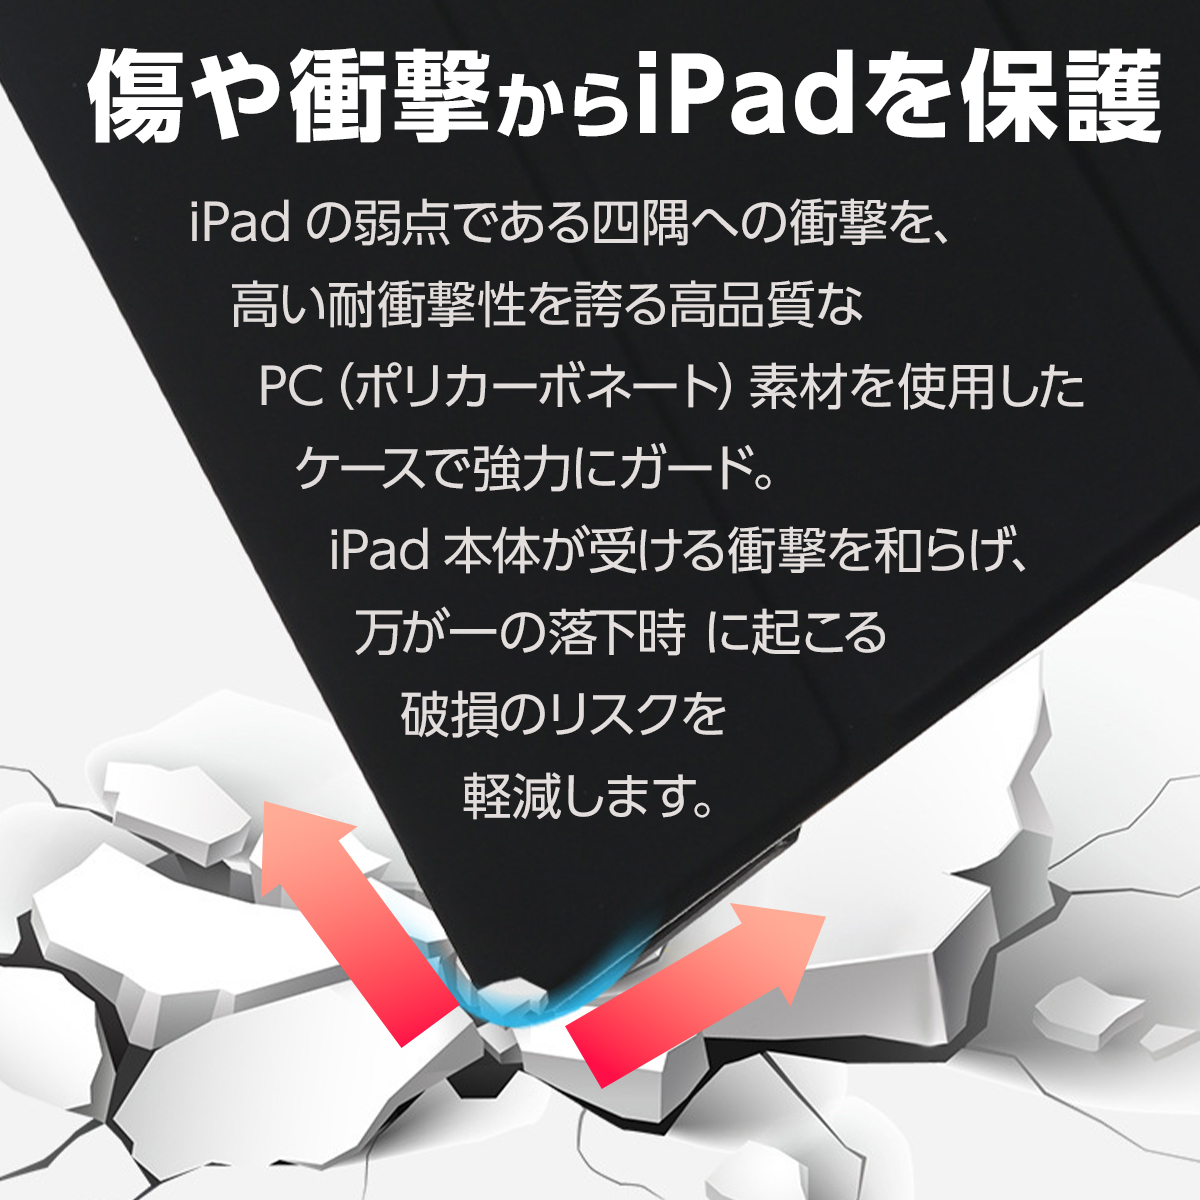 ipad кейс no. 9 поколение no. 10 поколение no. 6 поколение no. 7 поколение no. 8 поколение no. 5 поколение iPad покрытие air2 air3 10.2 9.7